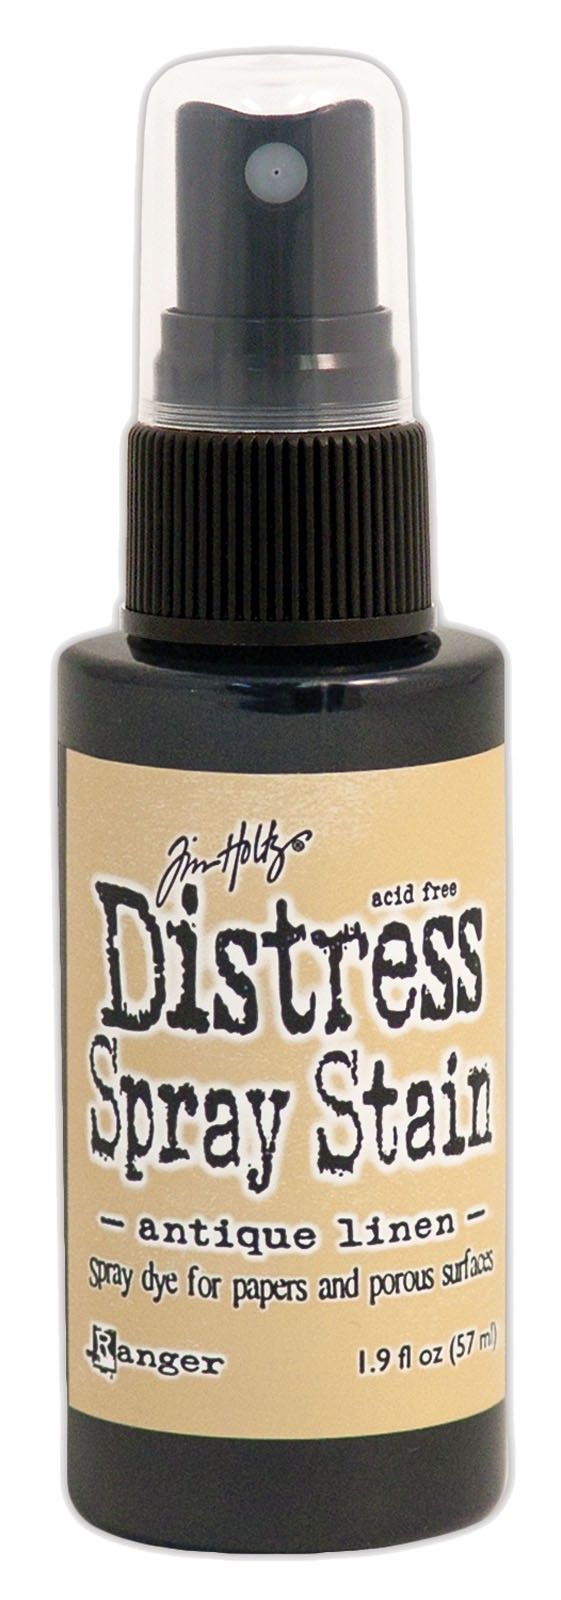 Tim Holtz Distress Spray Stain 57ml - Antique Linen